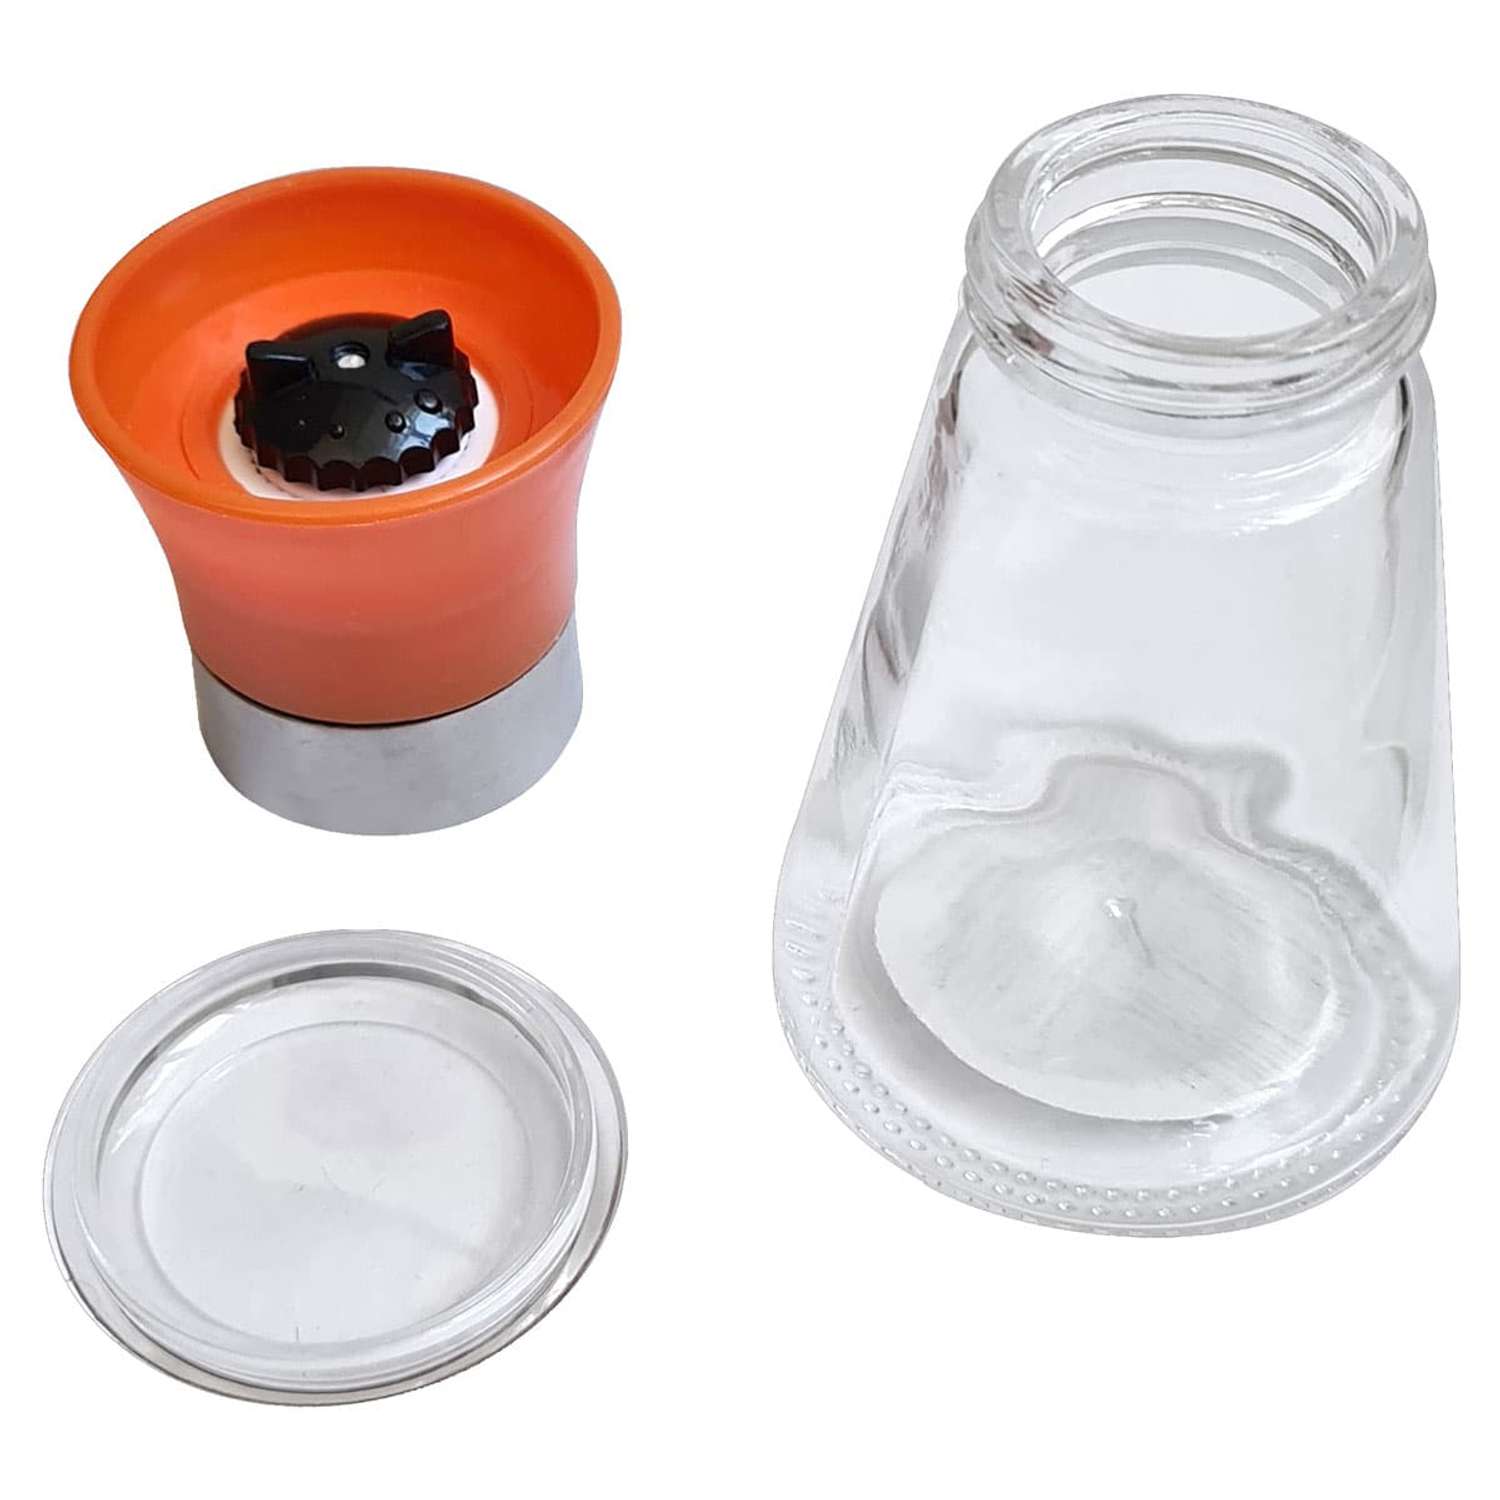 Мельница для соли и перца Wonder Life набор из 2 шт. стекло пластик керамические жернова 100 мл оранжевый и зеленый - фото 6